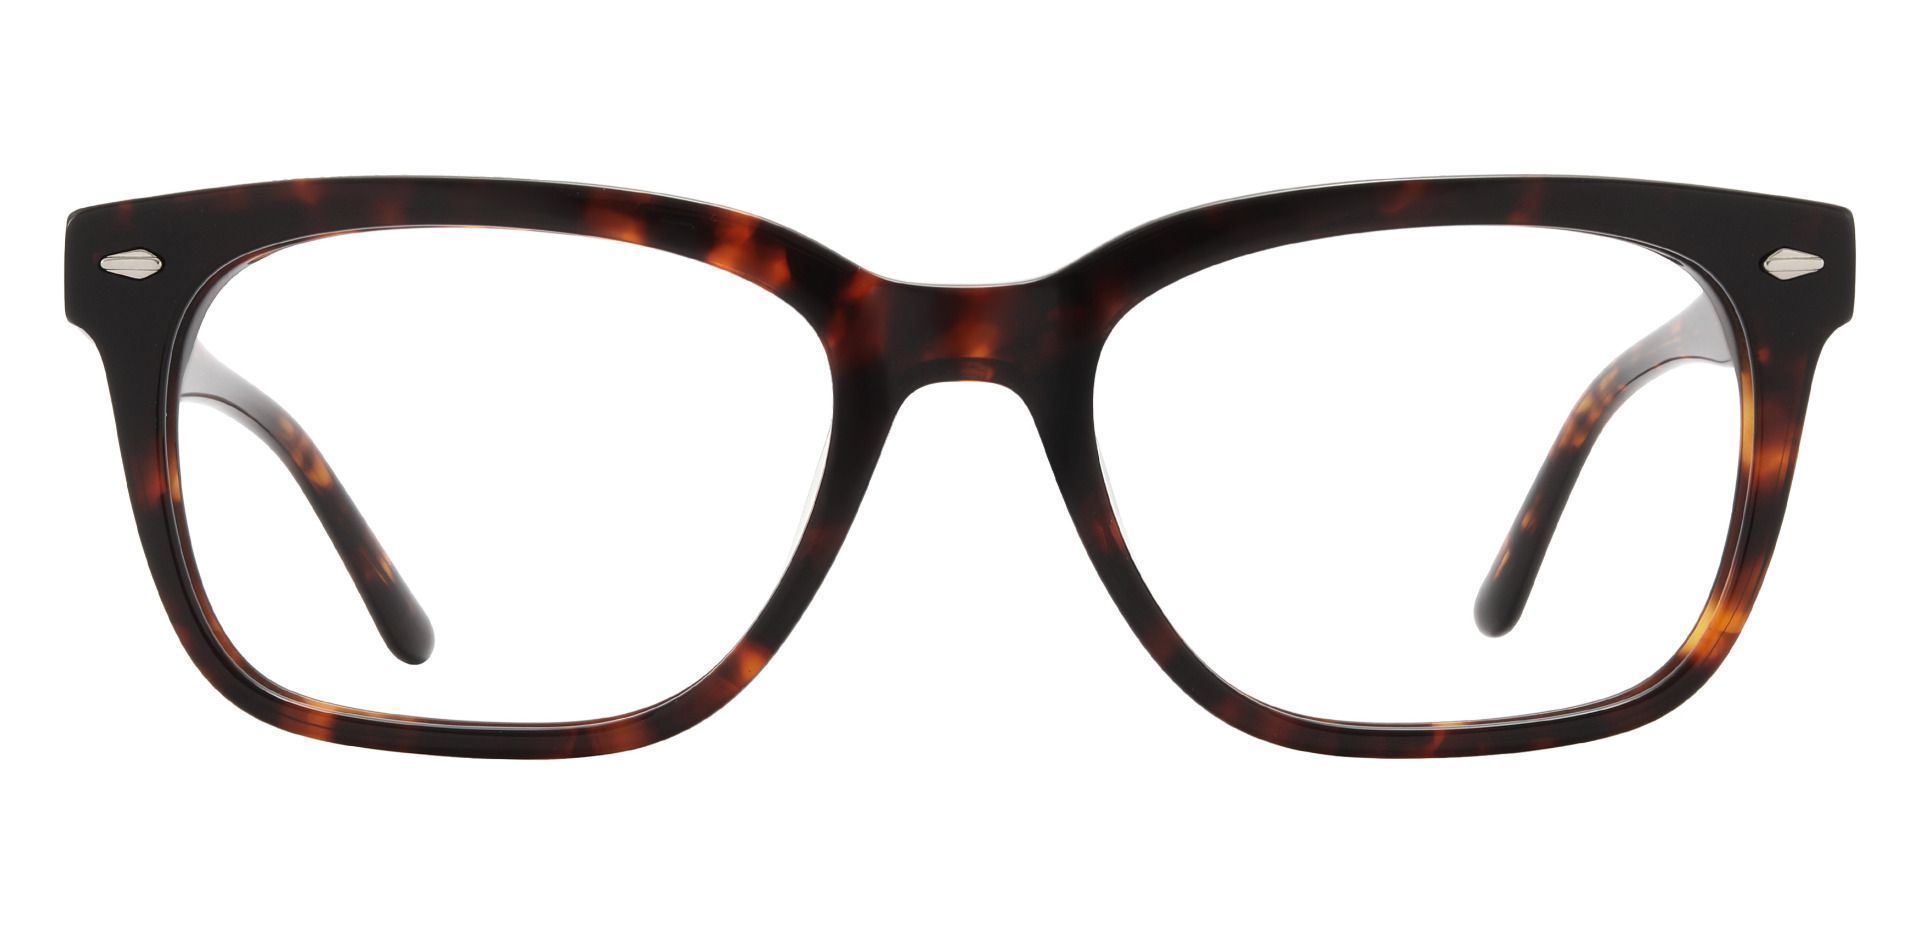 Sherman Rectangle Eyeglasses Frame Clear Mens Eyeglasses Payne Glasses 